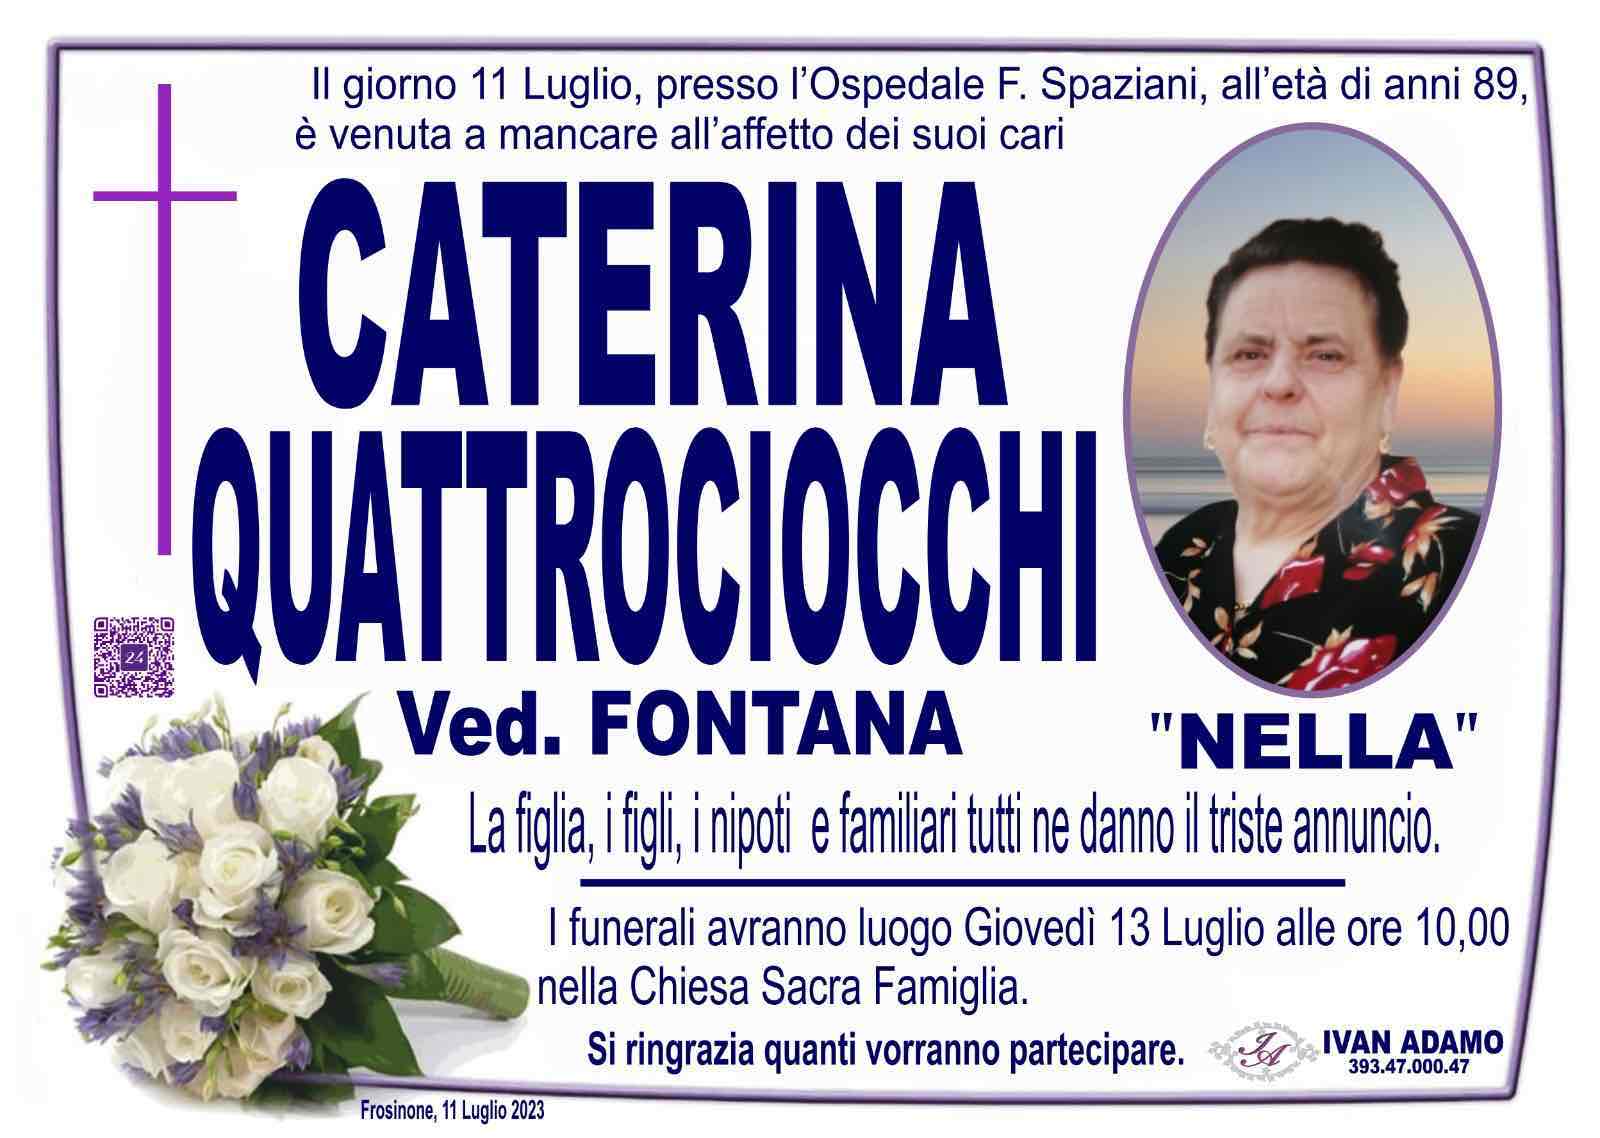 Caterina Quattrociocchi